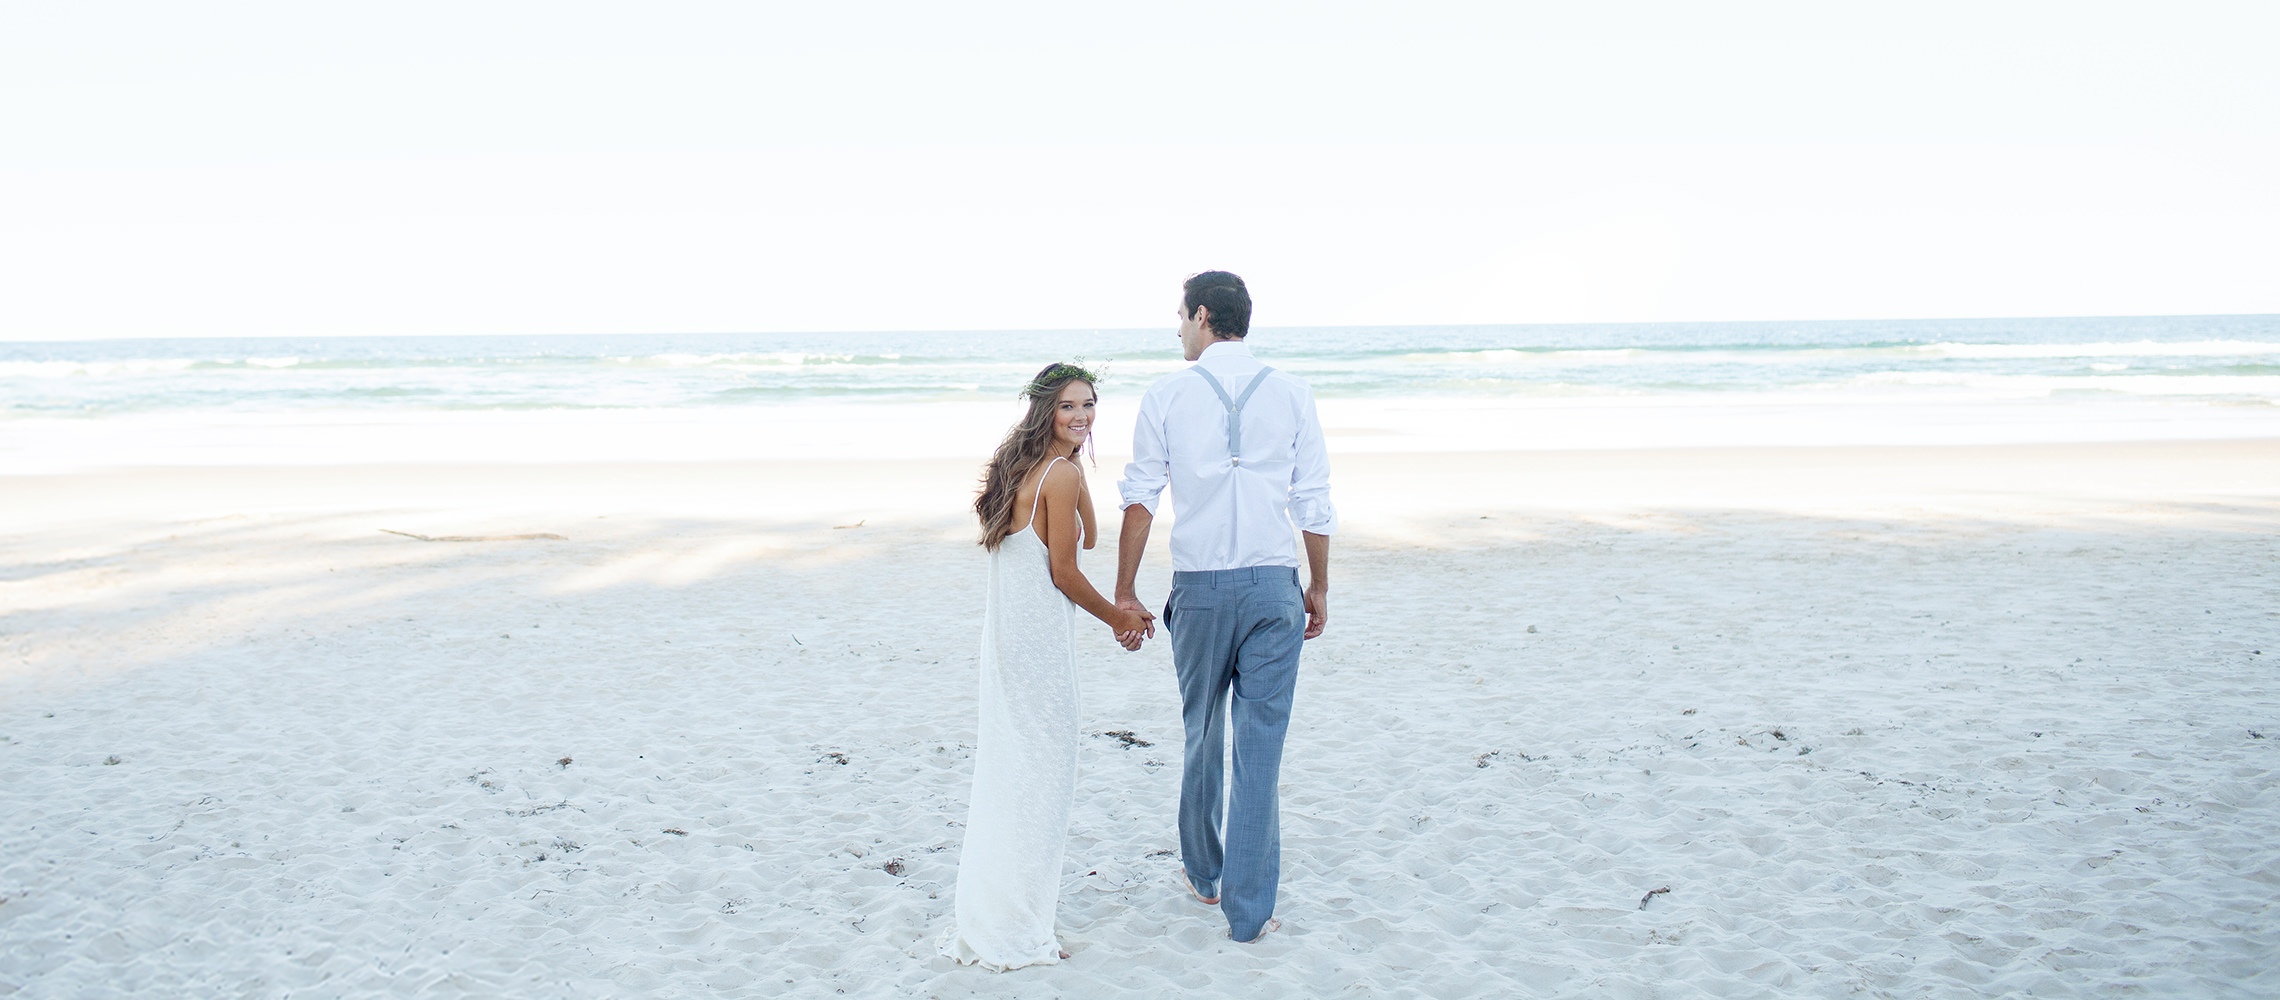 Sposi che camminano sulla spiaggia di sabbia bianca.